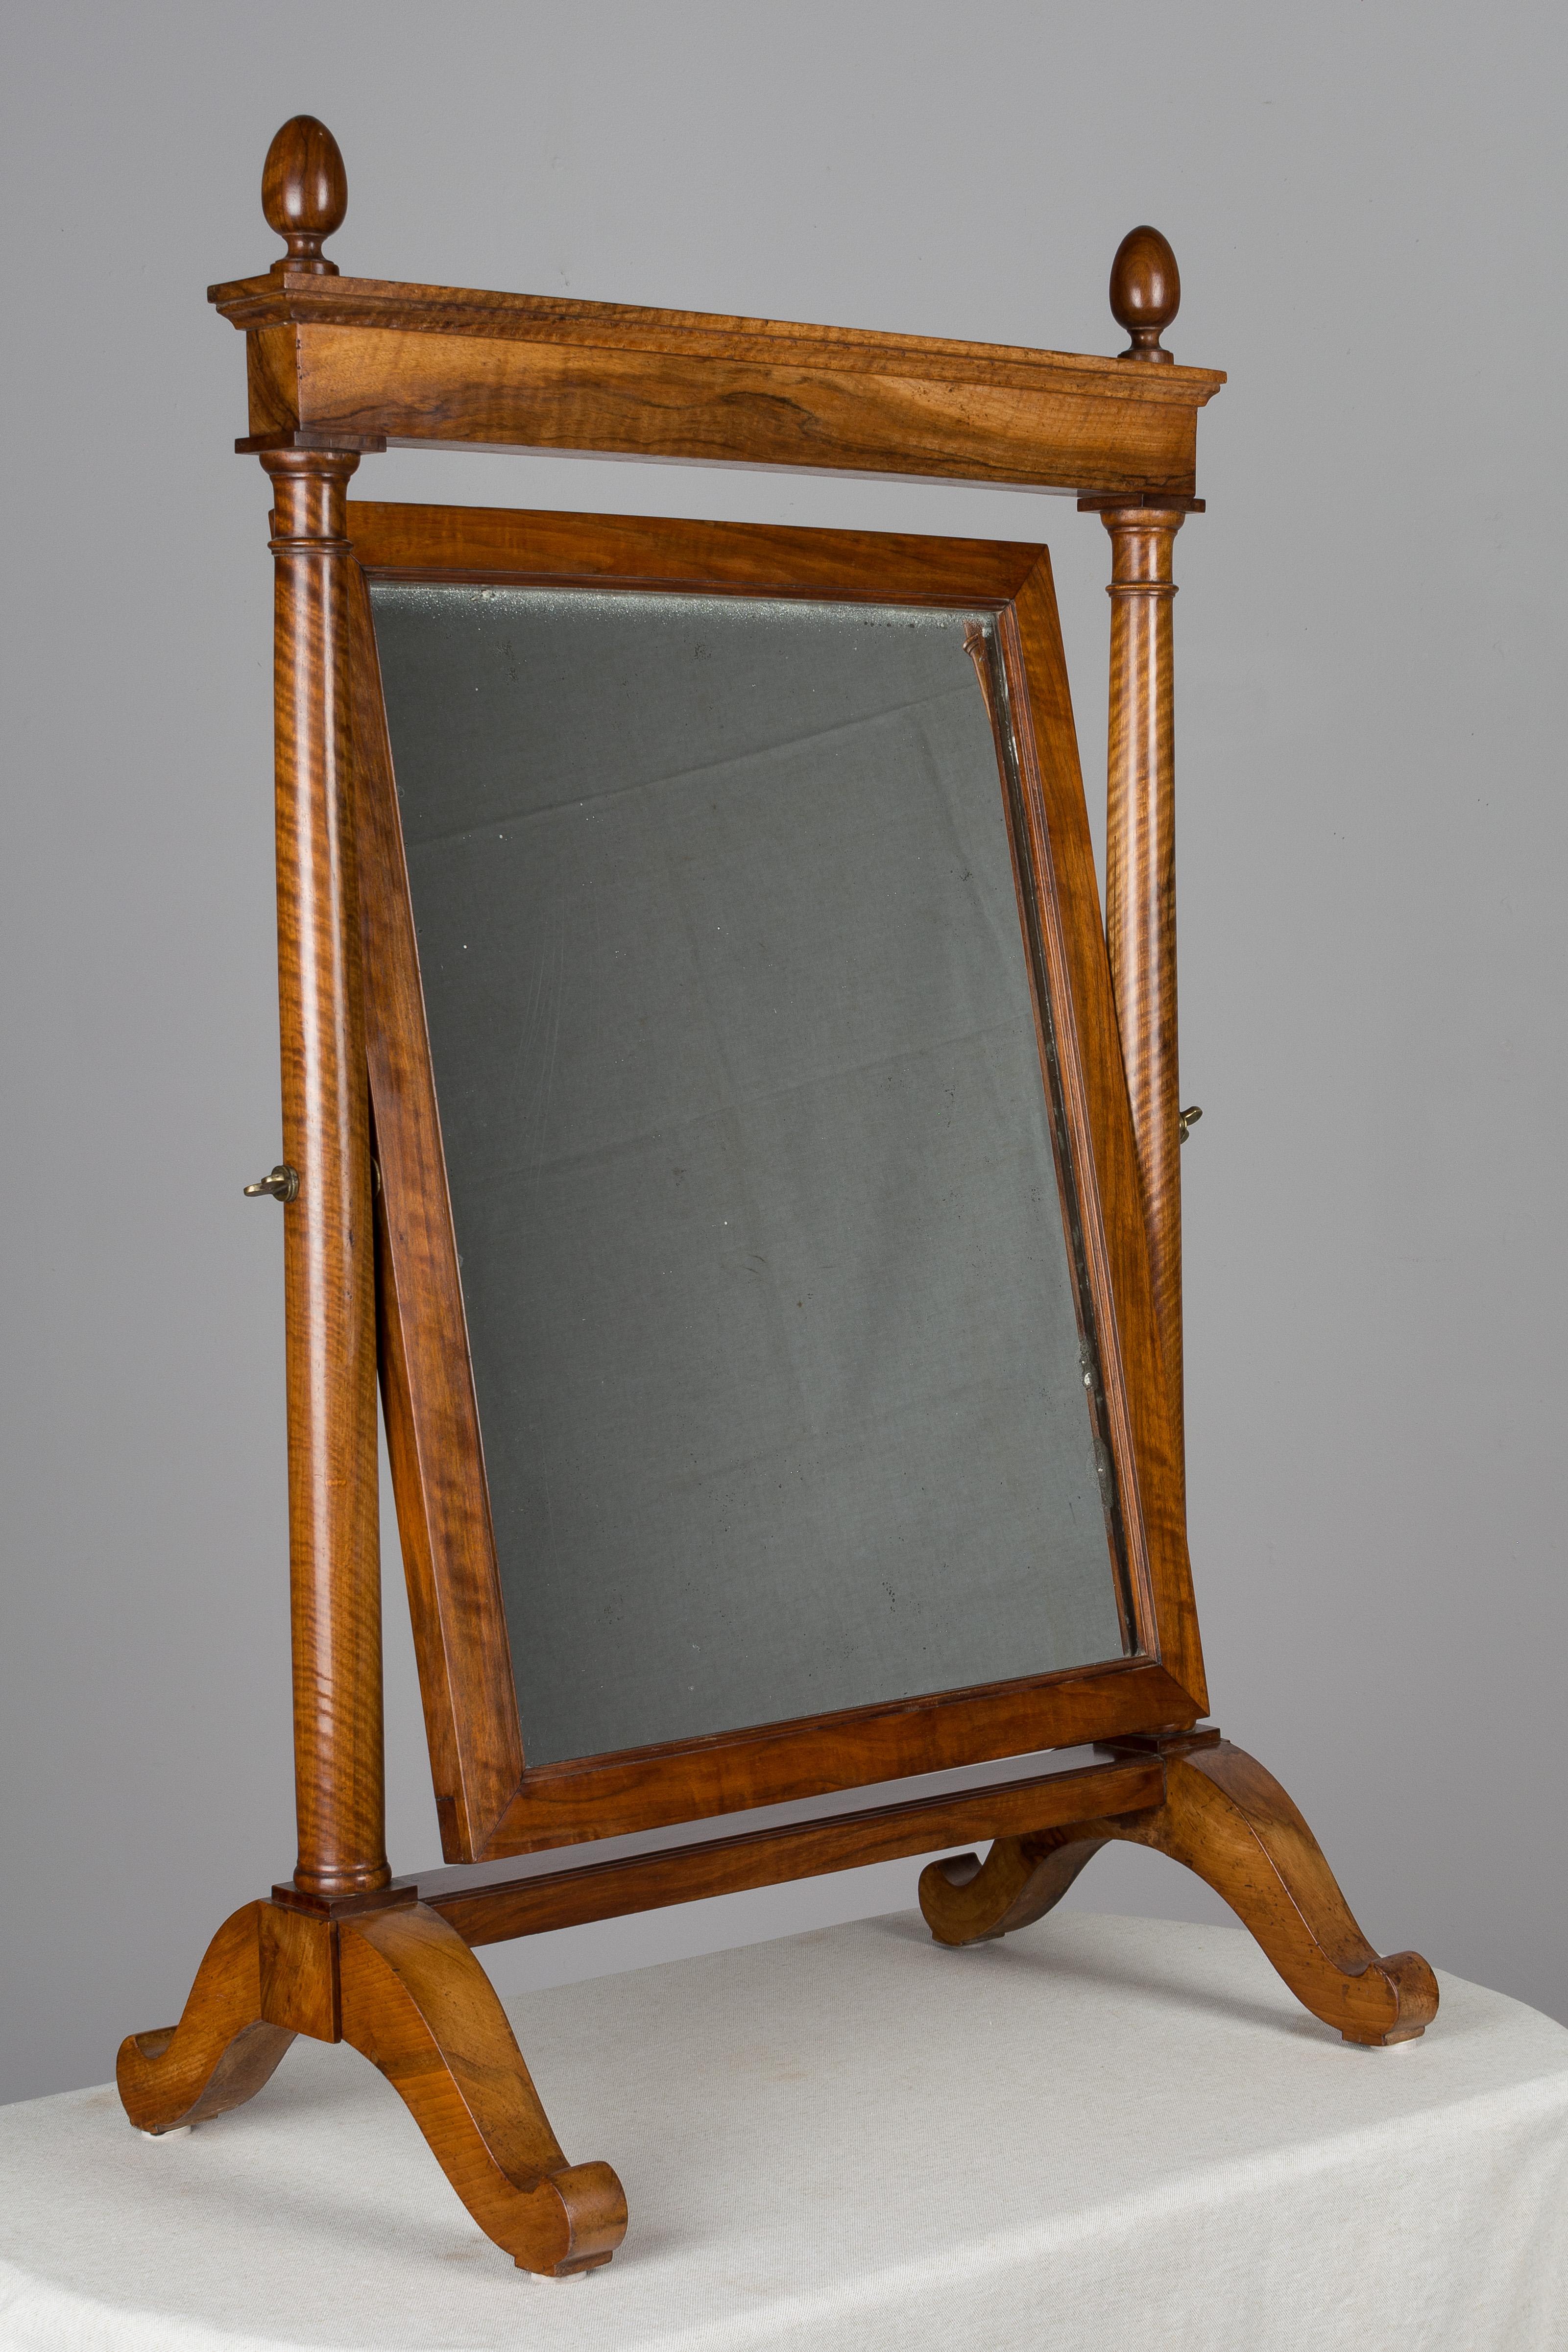 miroir de style Empire français du 19ème siècle, en noyer massif, avec un beau grain de bois et une patine cirée. De belles proportions et une grande échelle pour un miroir de table. Finitions en forme d'œuf tourné, miroir épais avec quelques